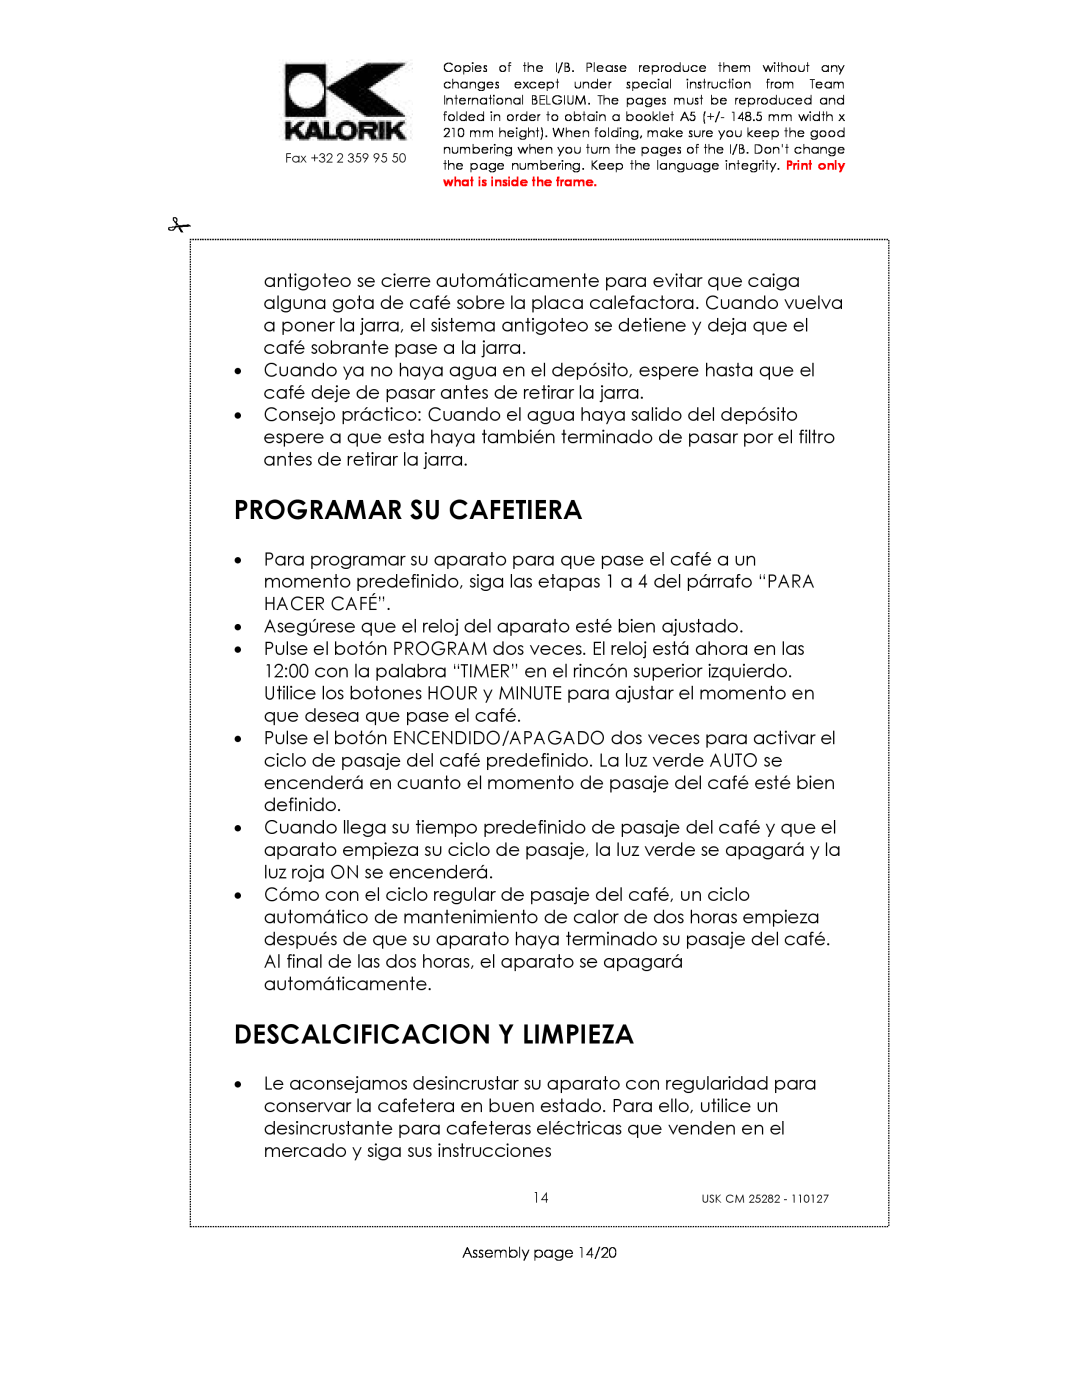 Kalorik USK CM 25282 manual Programar Su Cafetiera, Descalcificacion Y Limpieza 